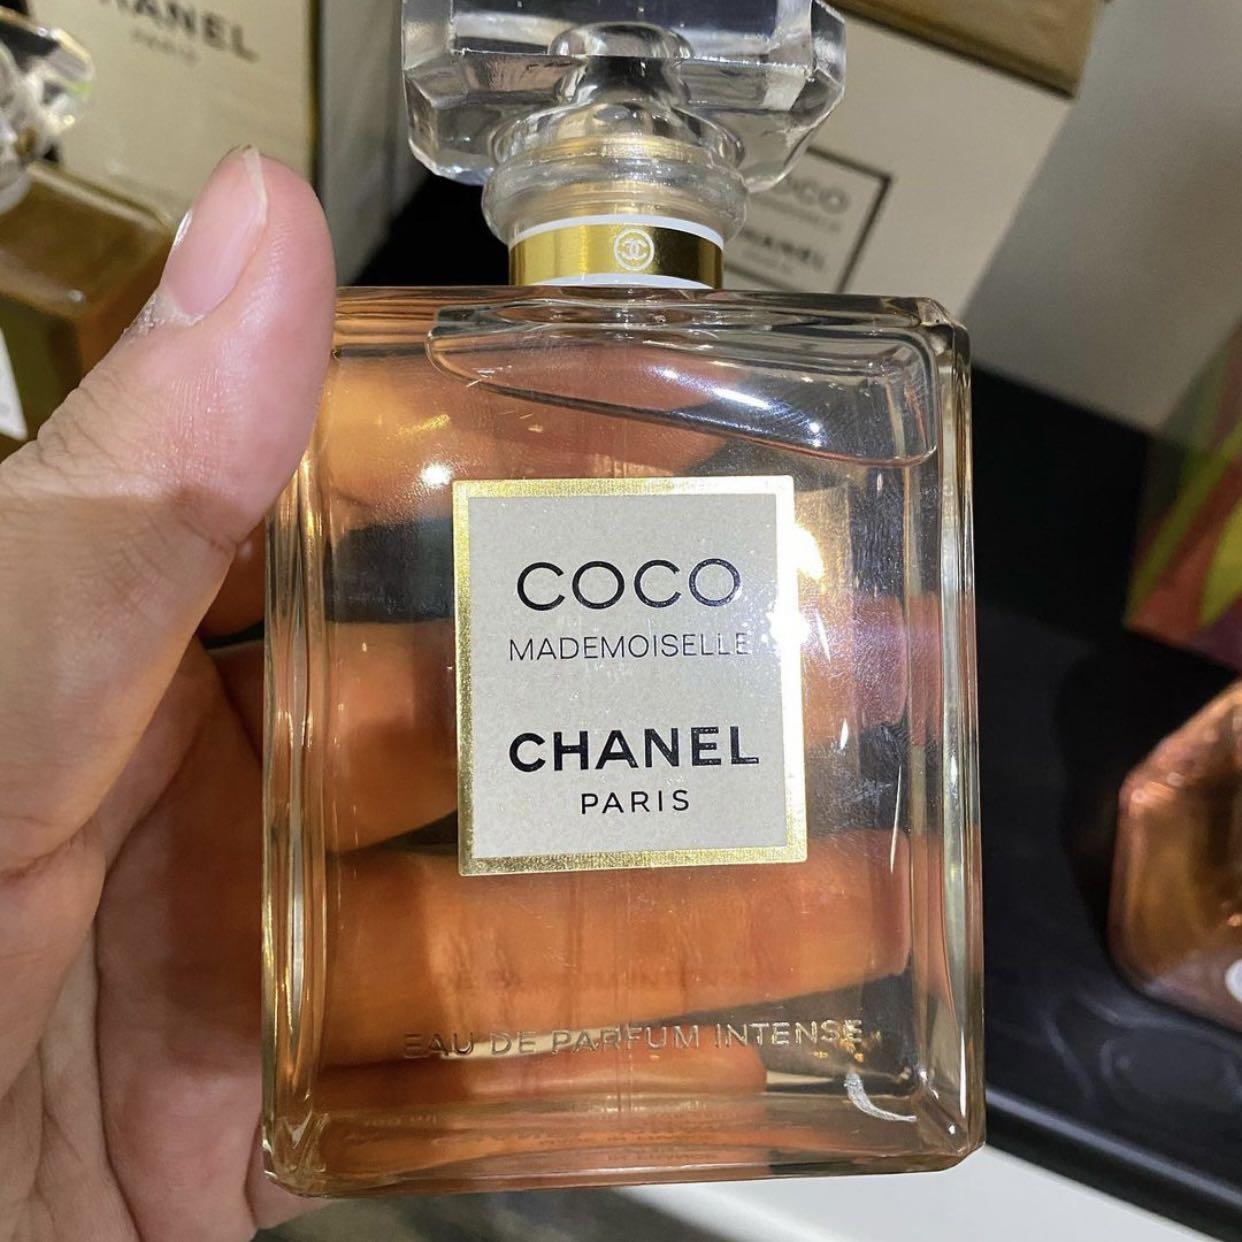 Chanel Coco Mademoiselle Eau De Parfum Vaporisateur For Women